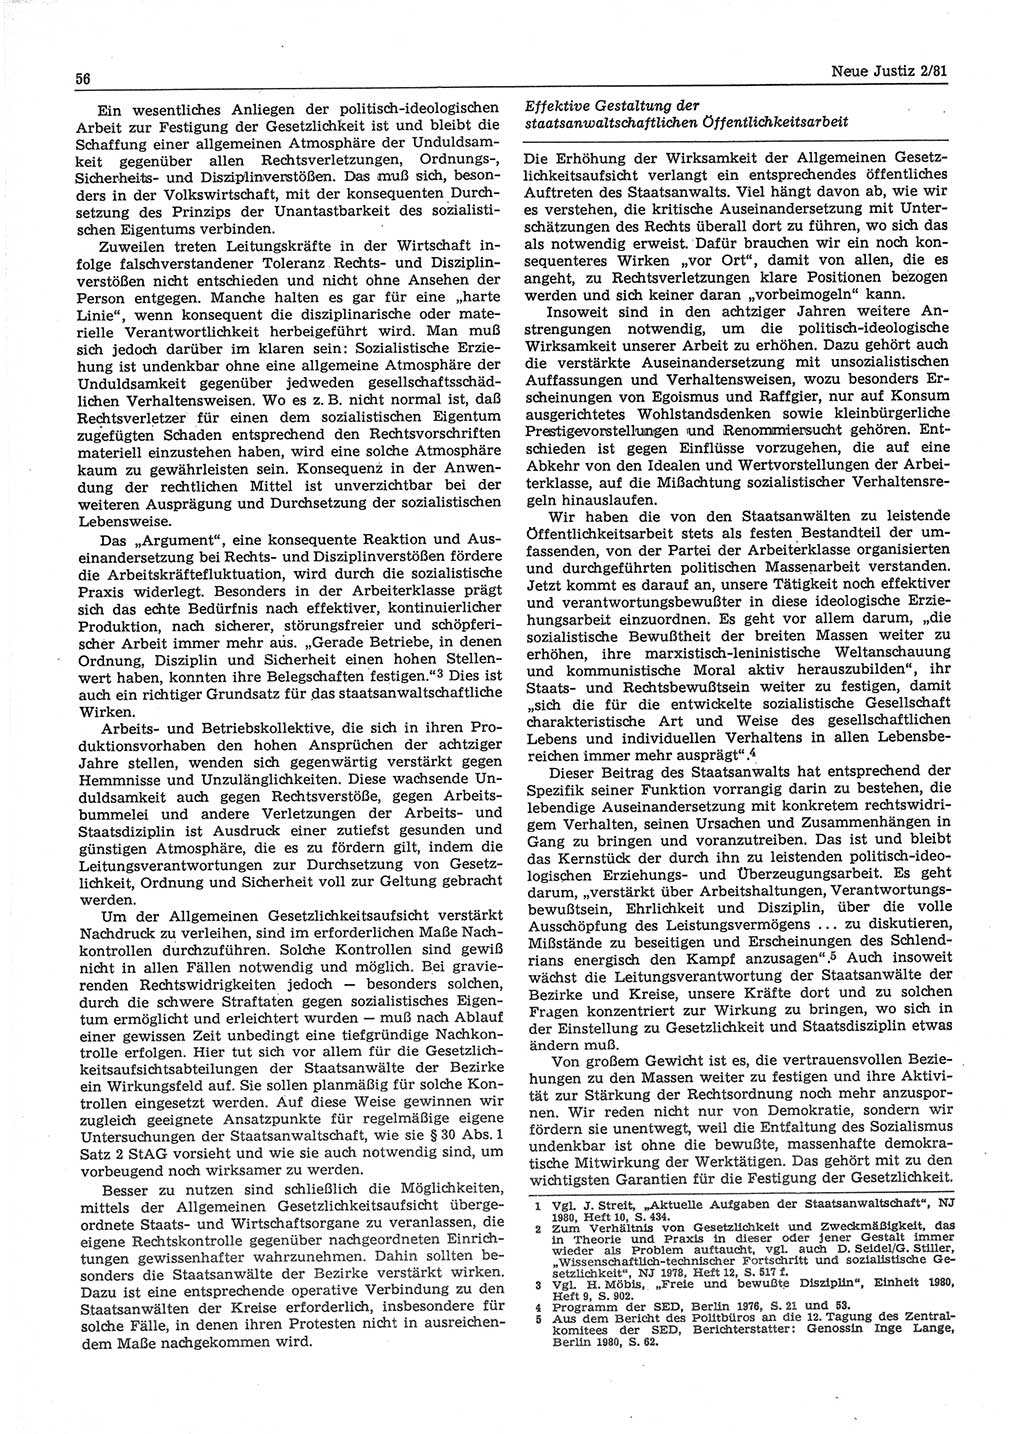 Neue Justiz (NJ), Zeitschrift für sozialistisches Recht und Gesetzlichkeit [Deutsche Demokratische Republik (DDR)], 35. Jahrgang 1981, Seite 56 (NJ DDR 1981, S. 56)